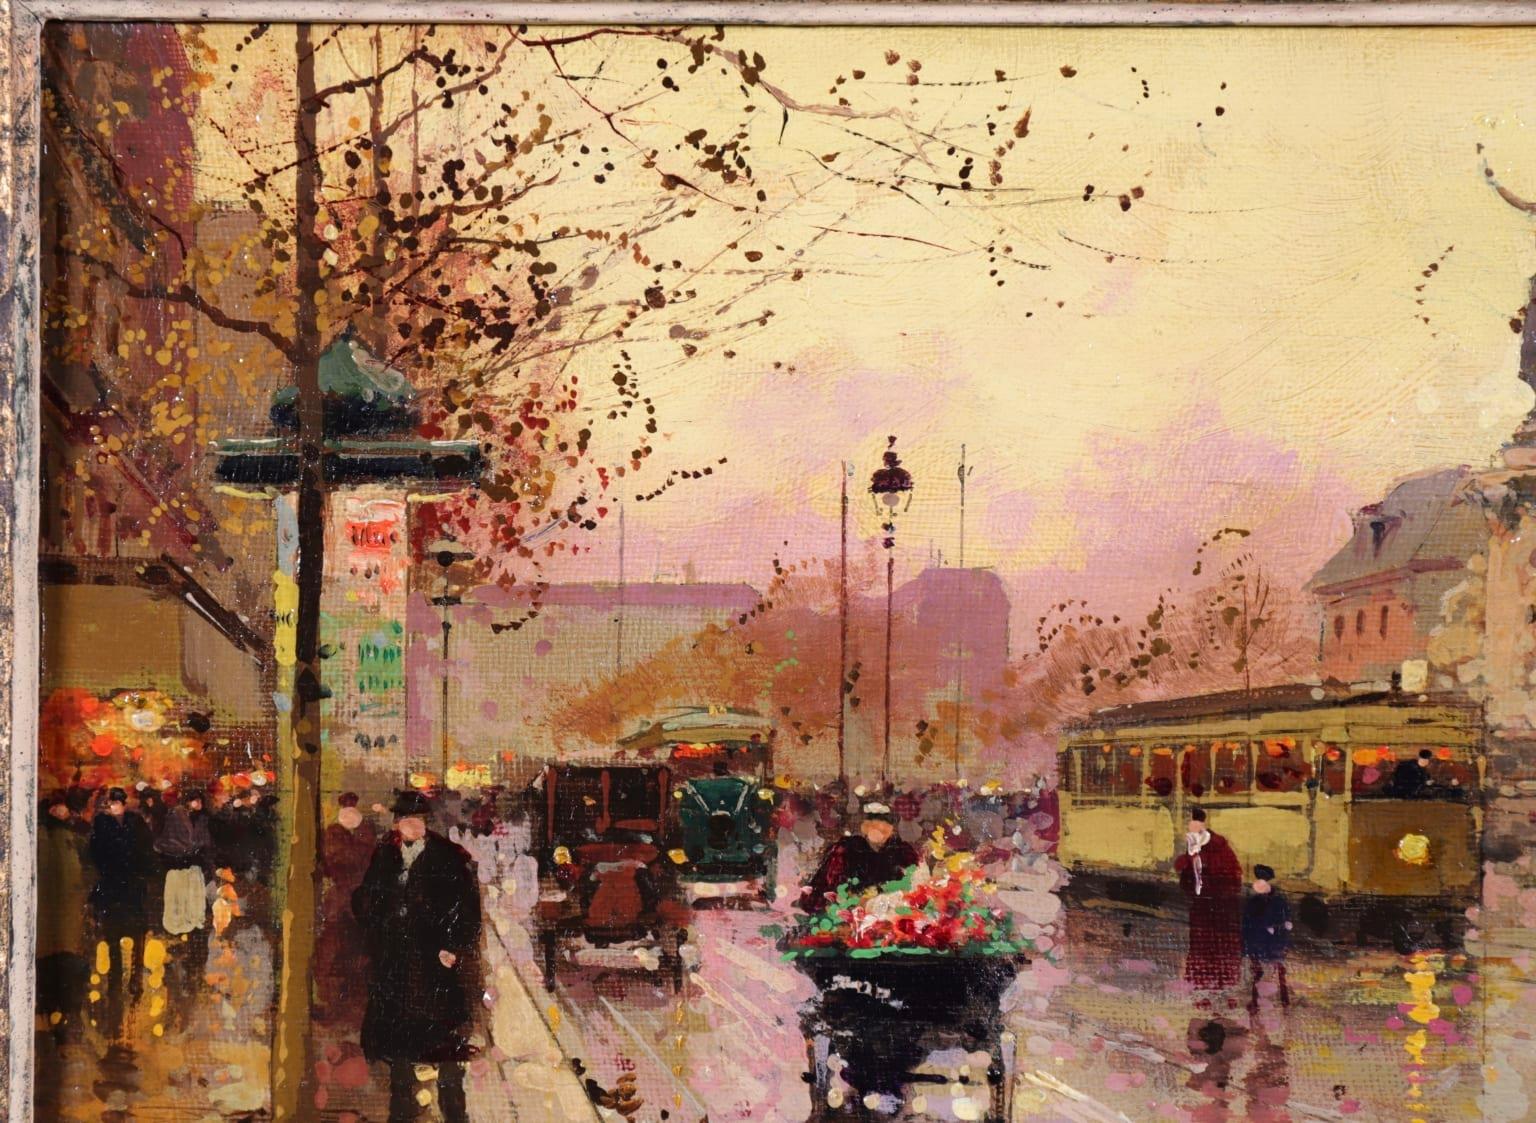 Place de la Republique - Impressionist Oil, Figures - Cityscape - Edouard Cortes 1